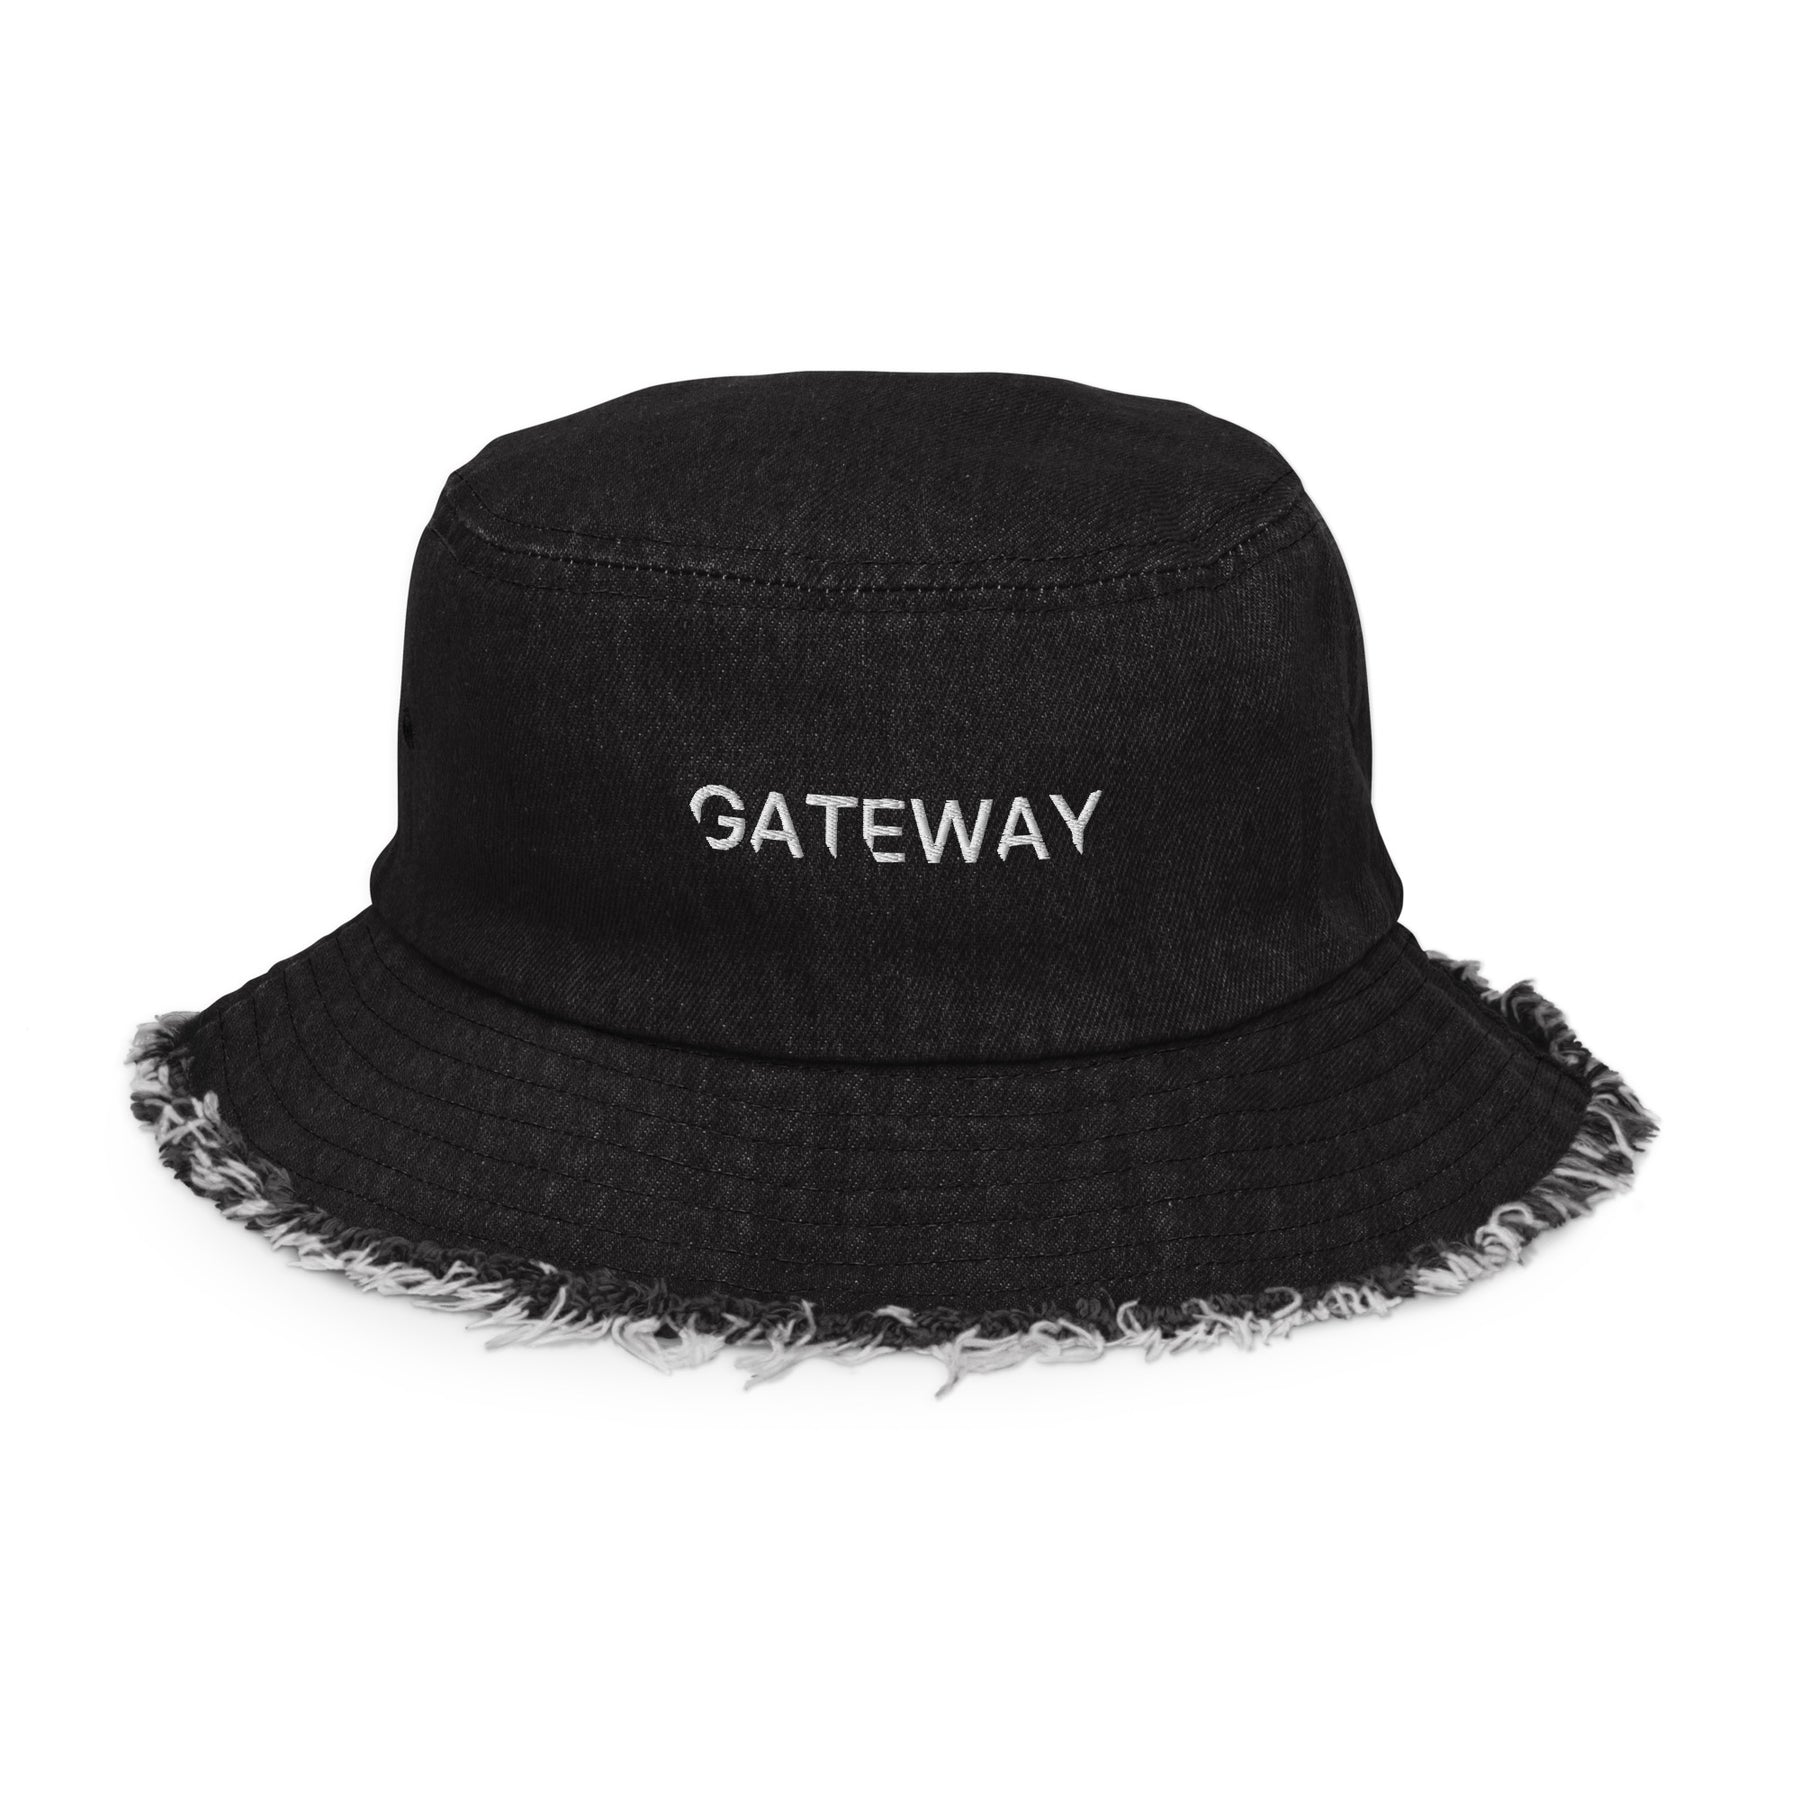 Gateway Distressed Denim bucket hat